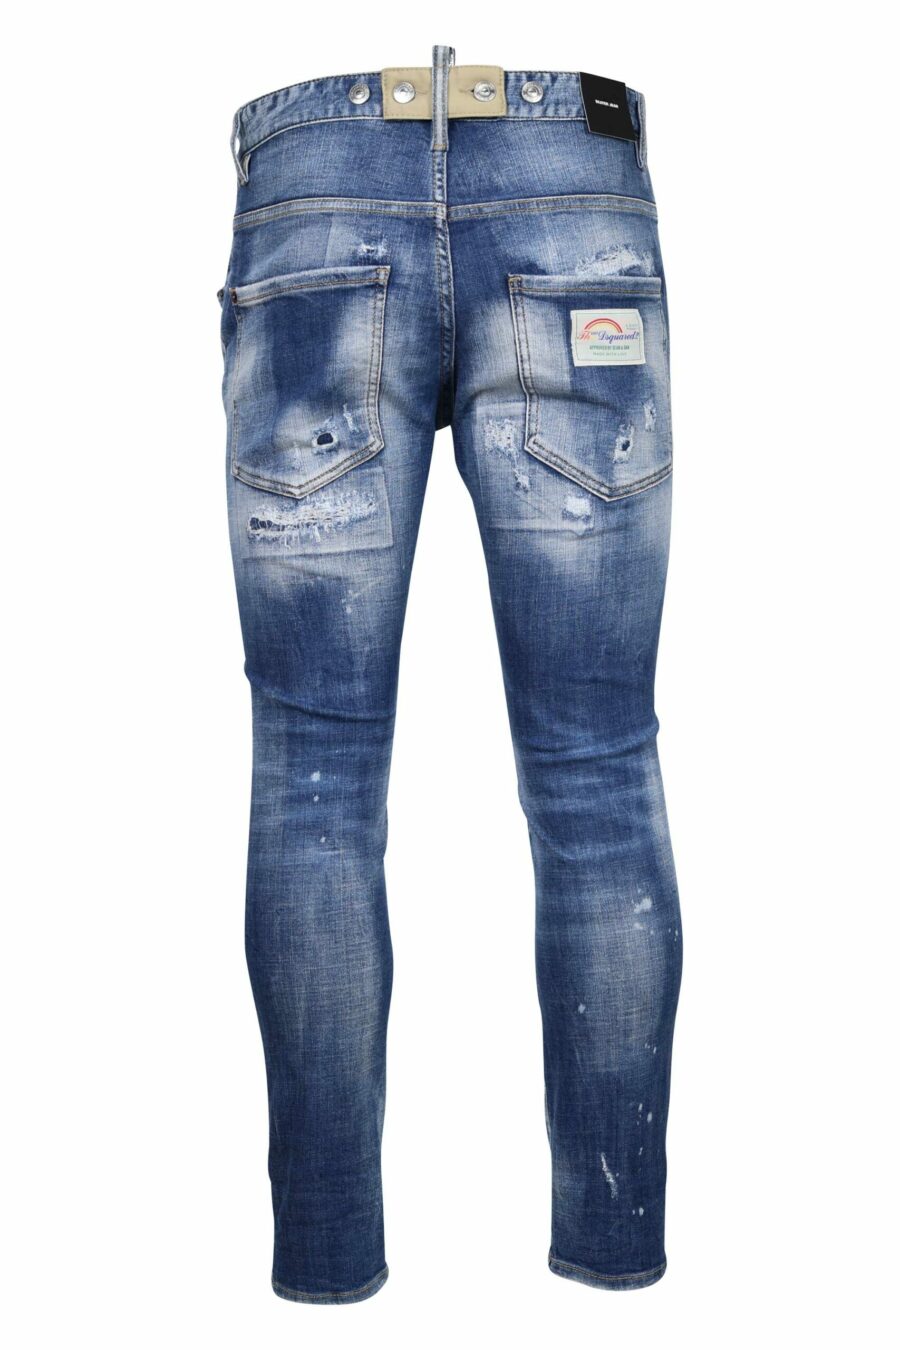 Hellblaue Jeans "Skaterjean" mit Rissen und ausgefranst - 8054148338848 2 skaliert